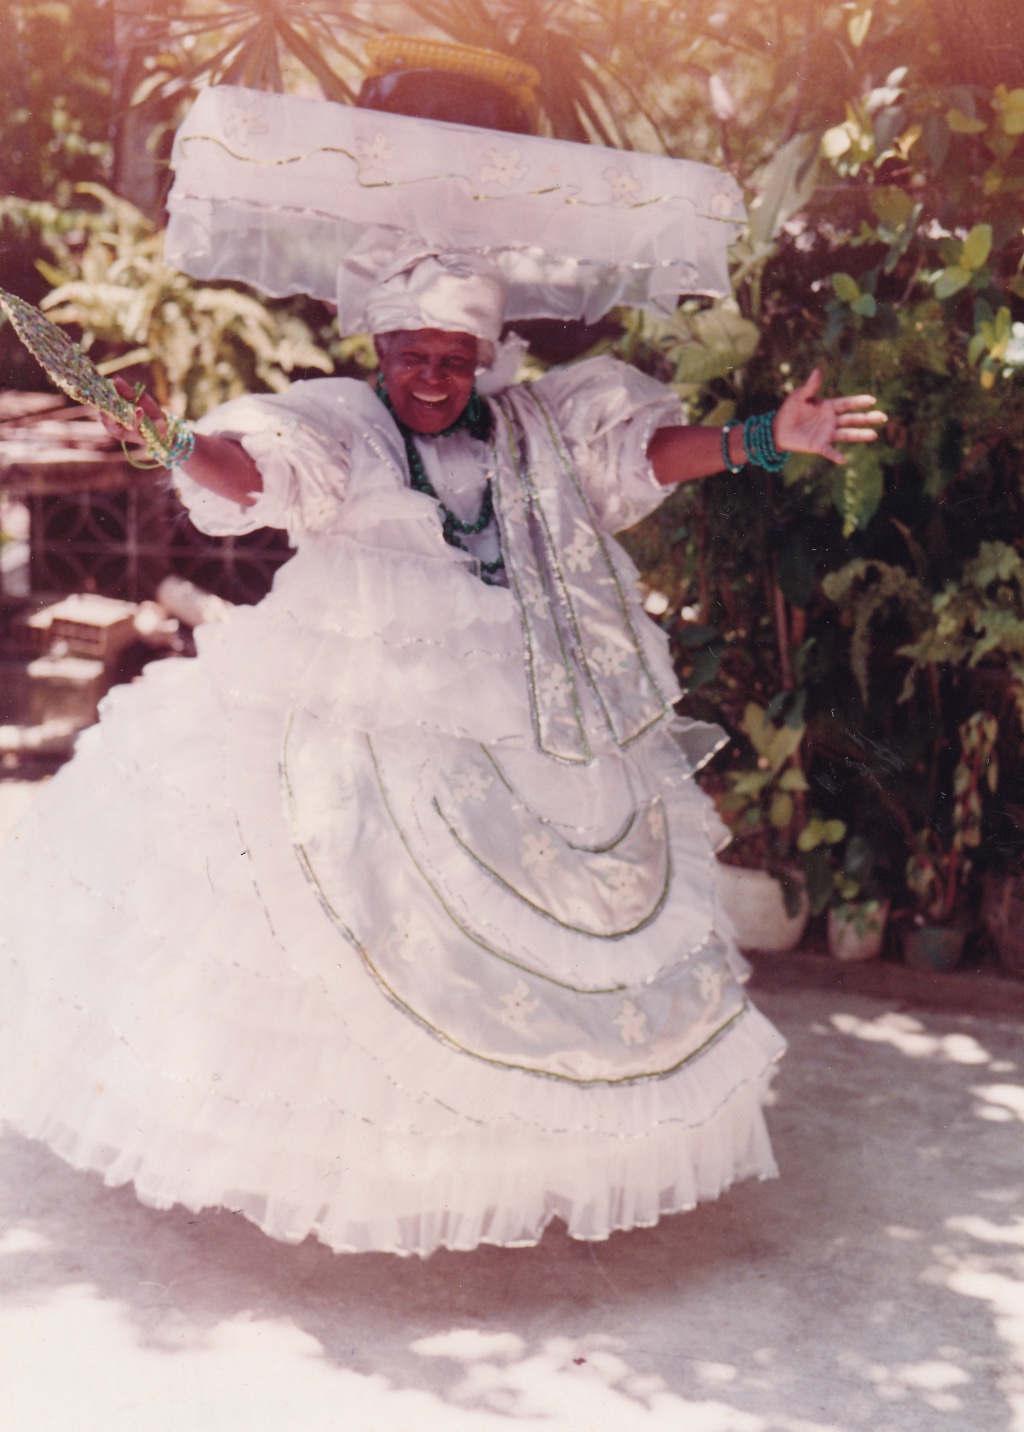 foto em preto e branco de uma mulher negra com saia de fita e turbante dançando